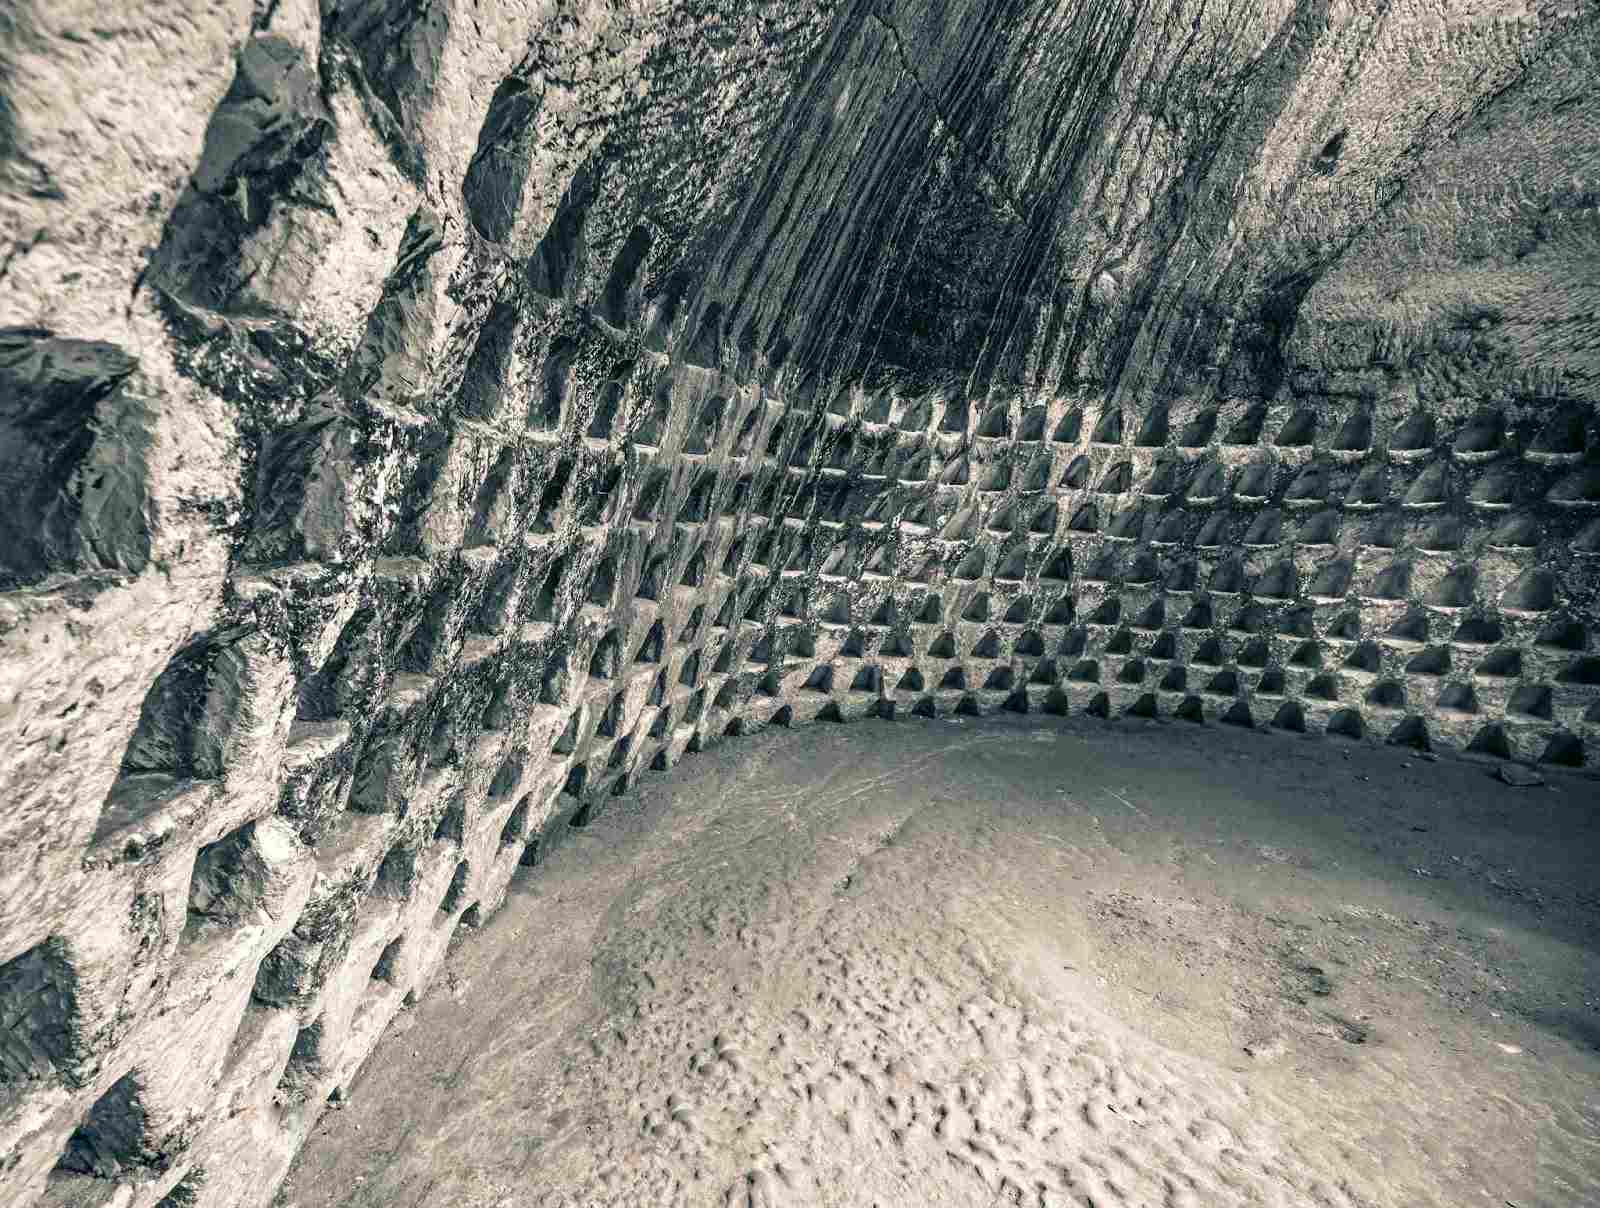 მილიონწლიანი უზარმაზარი, თანამედროვე ადამიანის მიერ შექმნილი მიწისქვეშა კომპლექსი წარსულში 1 – ში არსებობდა